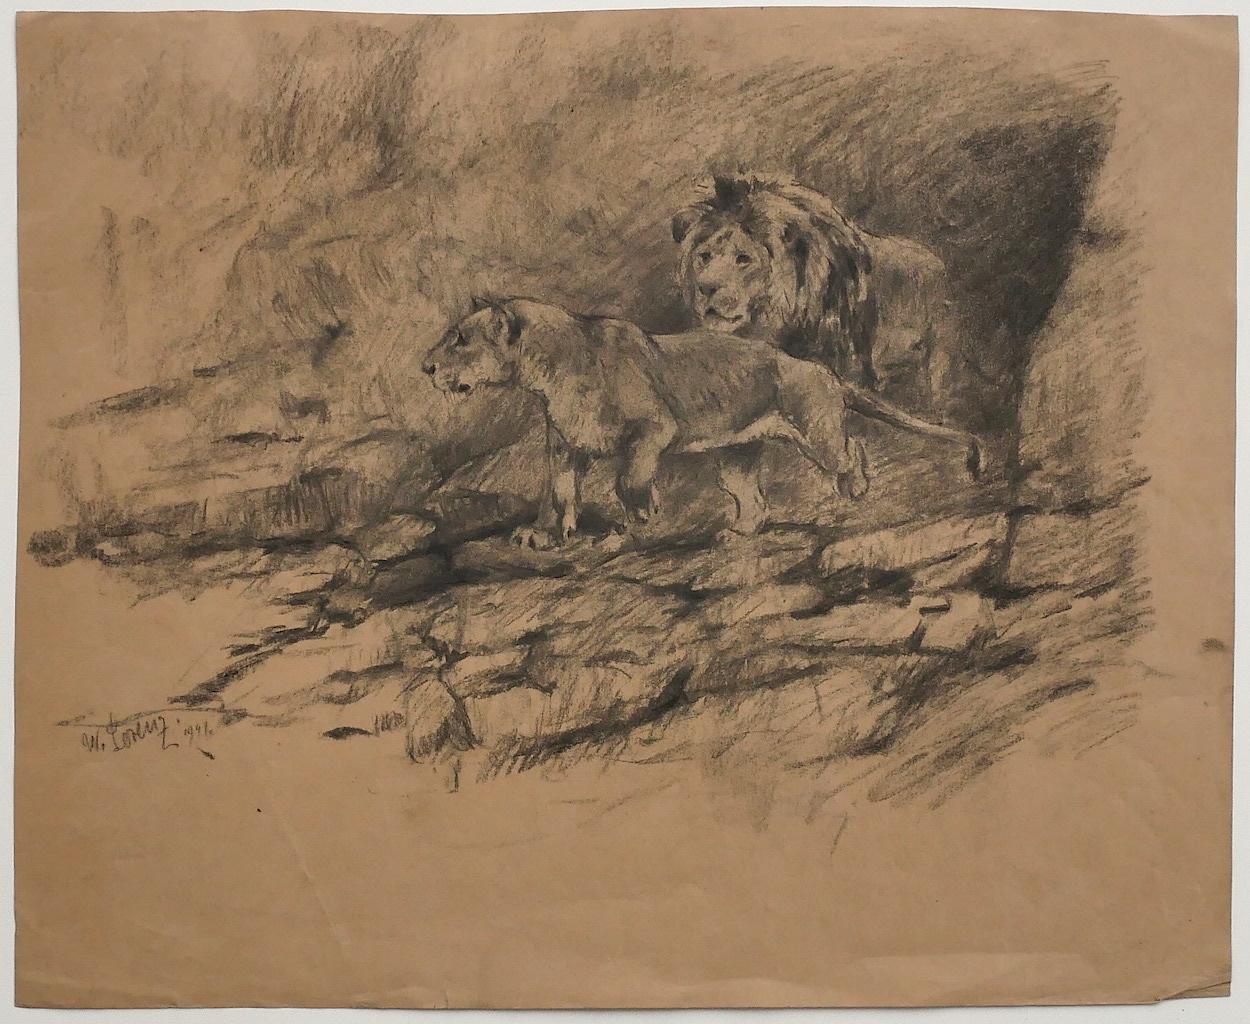 Der Löwe ist eine Originalzeichnung mit Bleistift von Willy Lorenz aus dem Jahr 1947.

Links unten handsigniert und datiert.

Der Erhaltungszustand ist bis auf einige Faltungen sehr gut.

Blattgröße: 34 x 41,5 cm

Das Kunstwerk stellt eine Szenerie